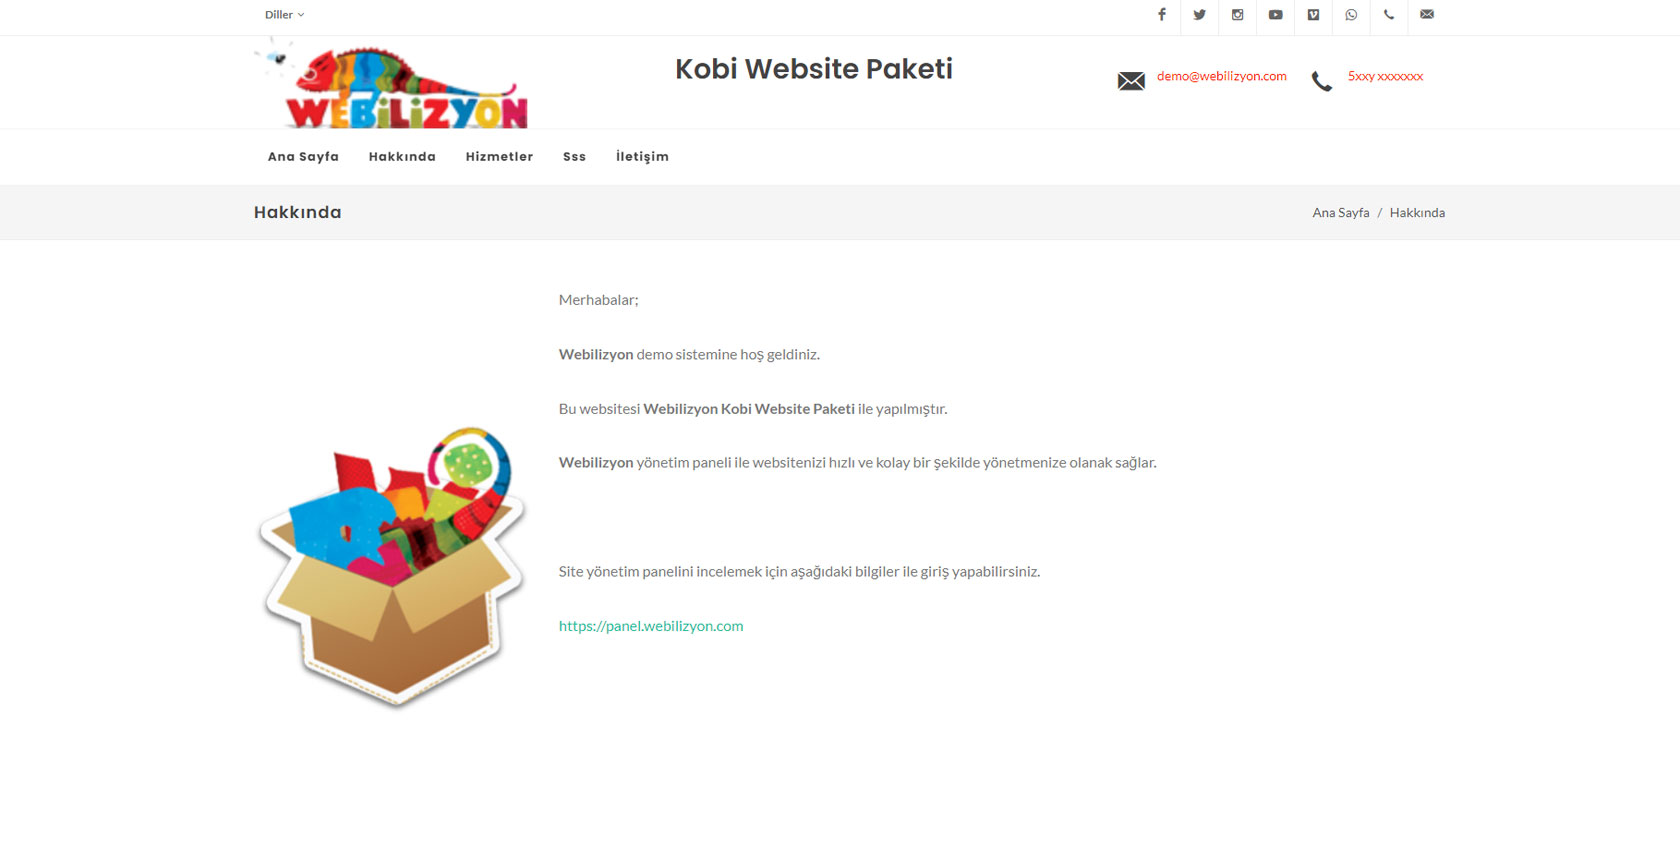 Kobi Web Site Paketi